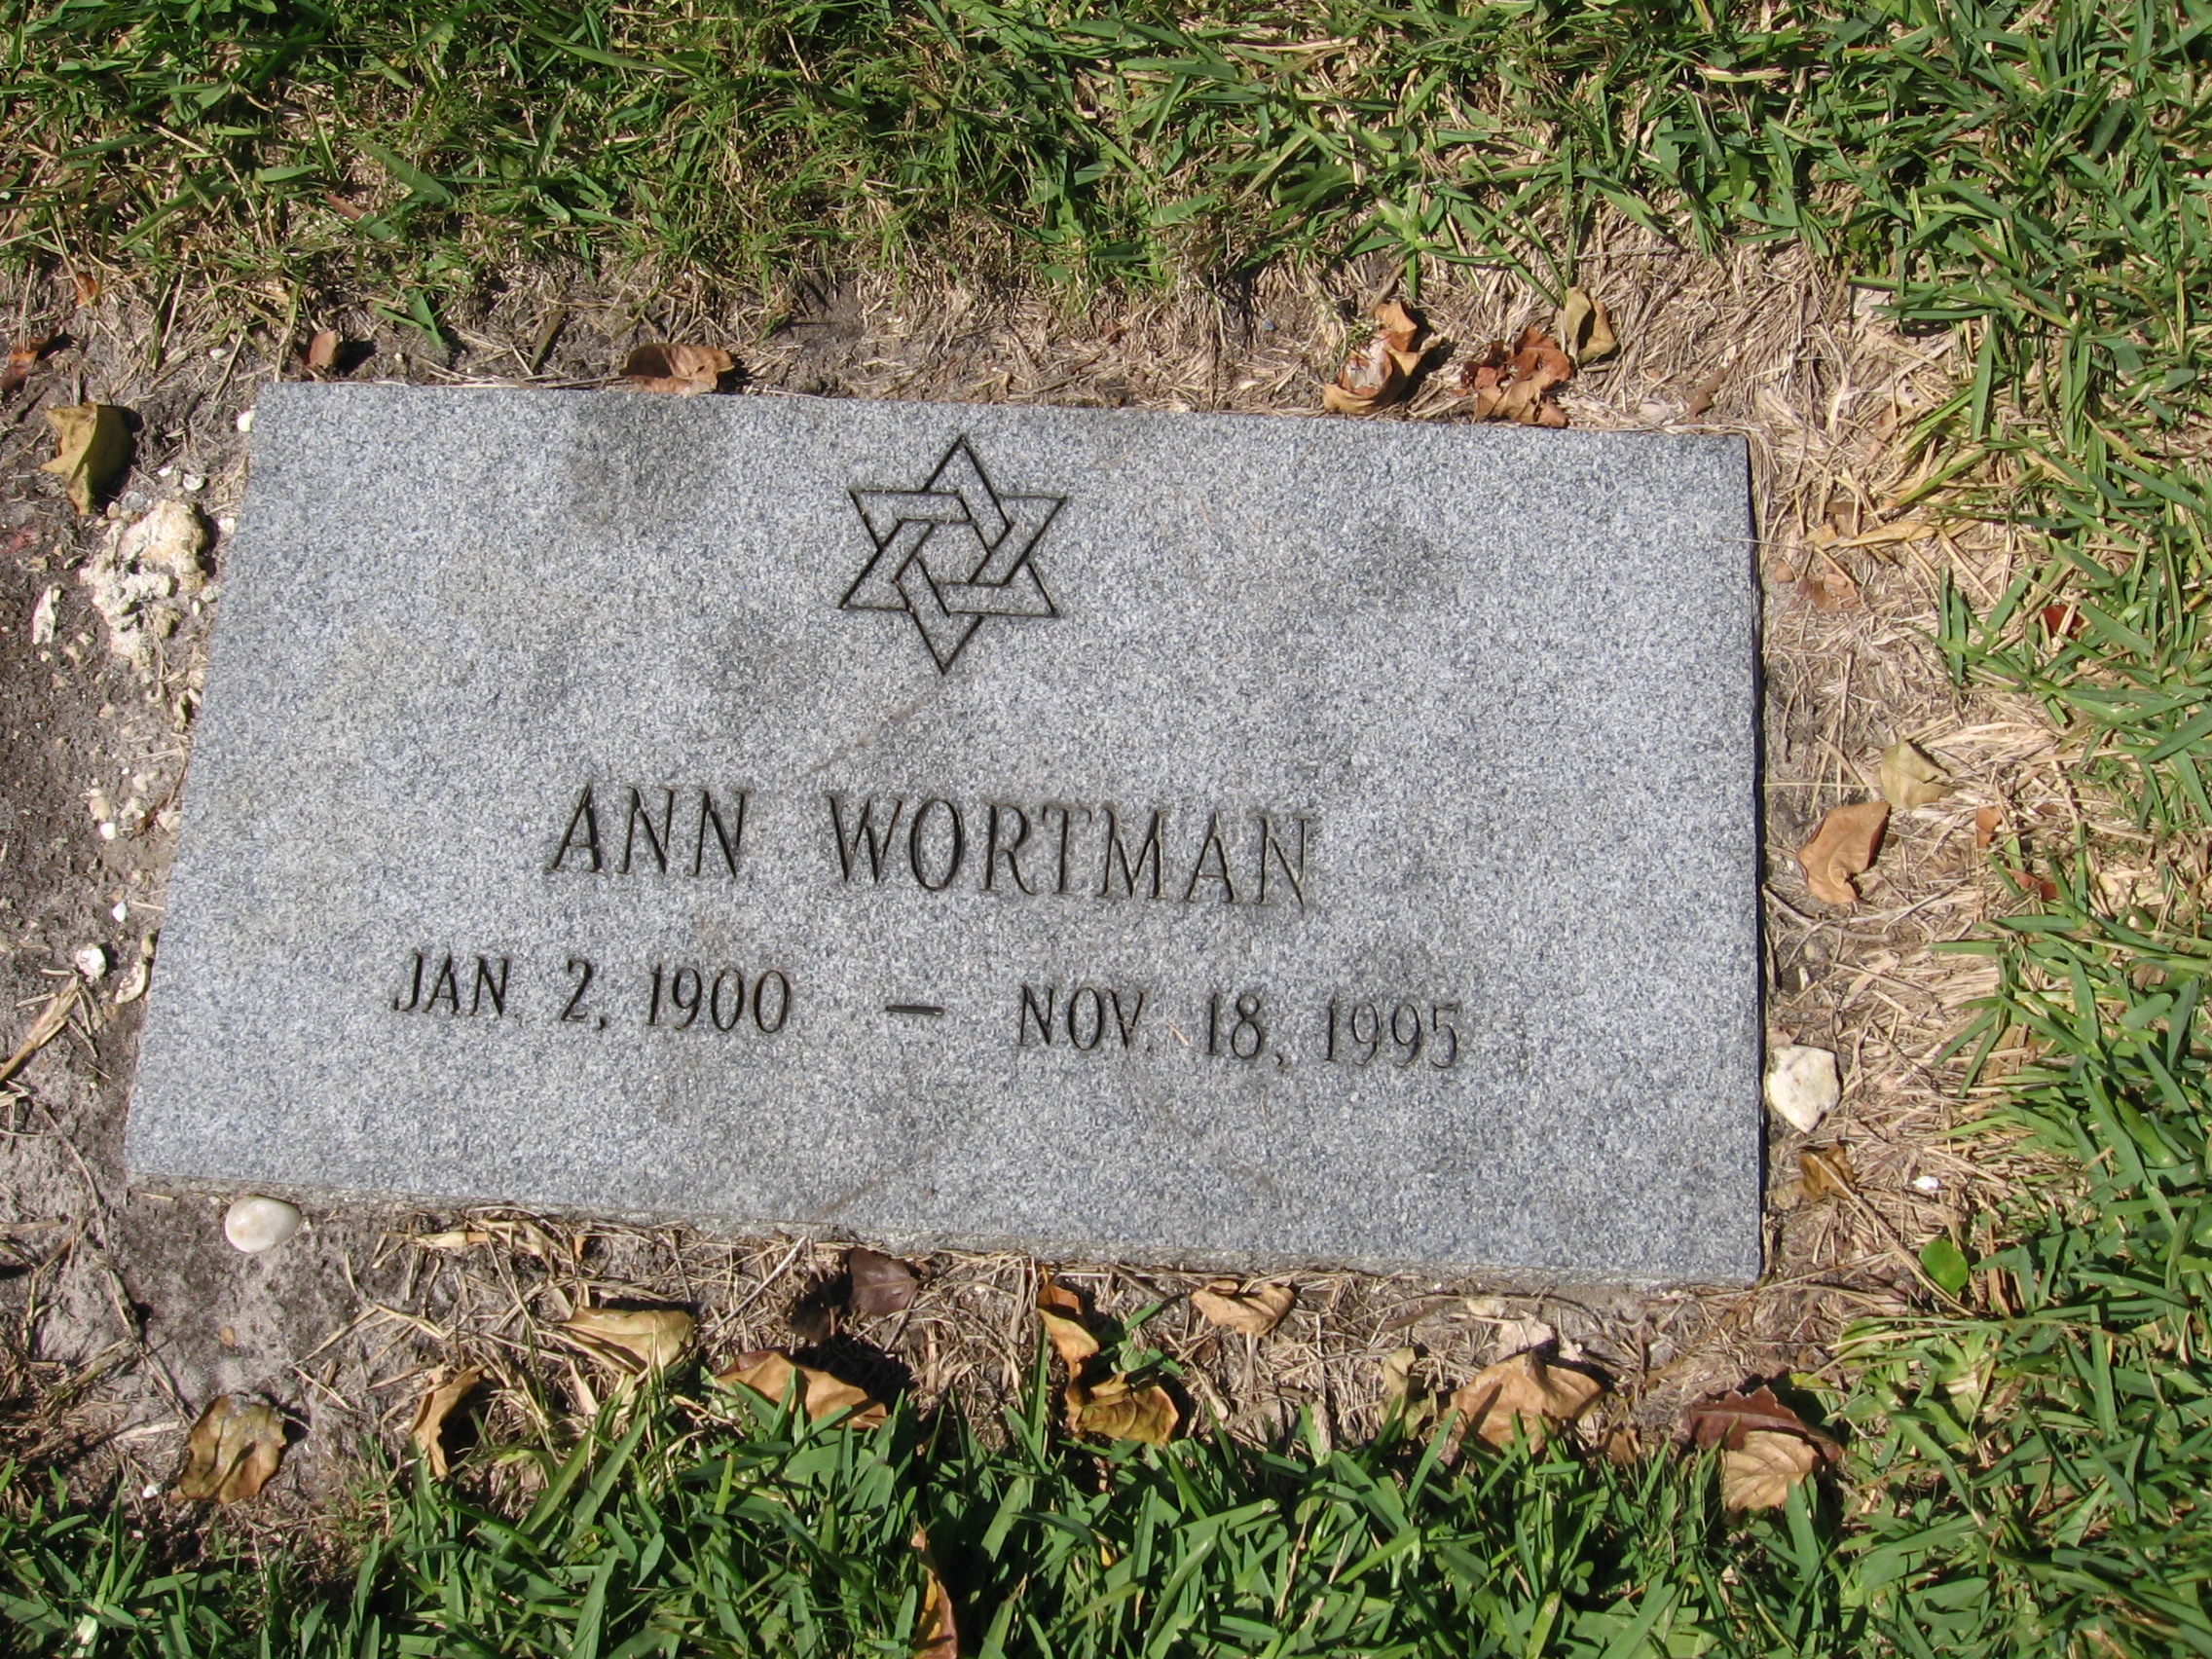 Ann Wortman